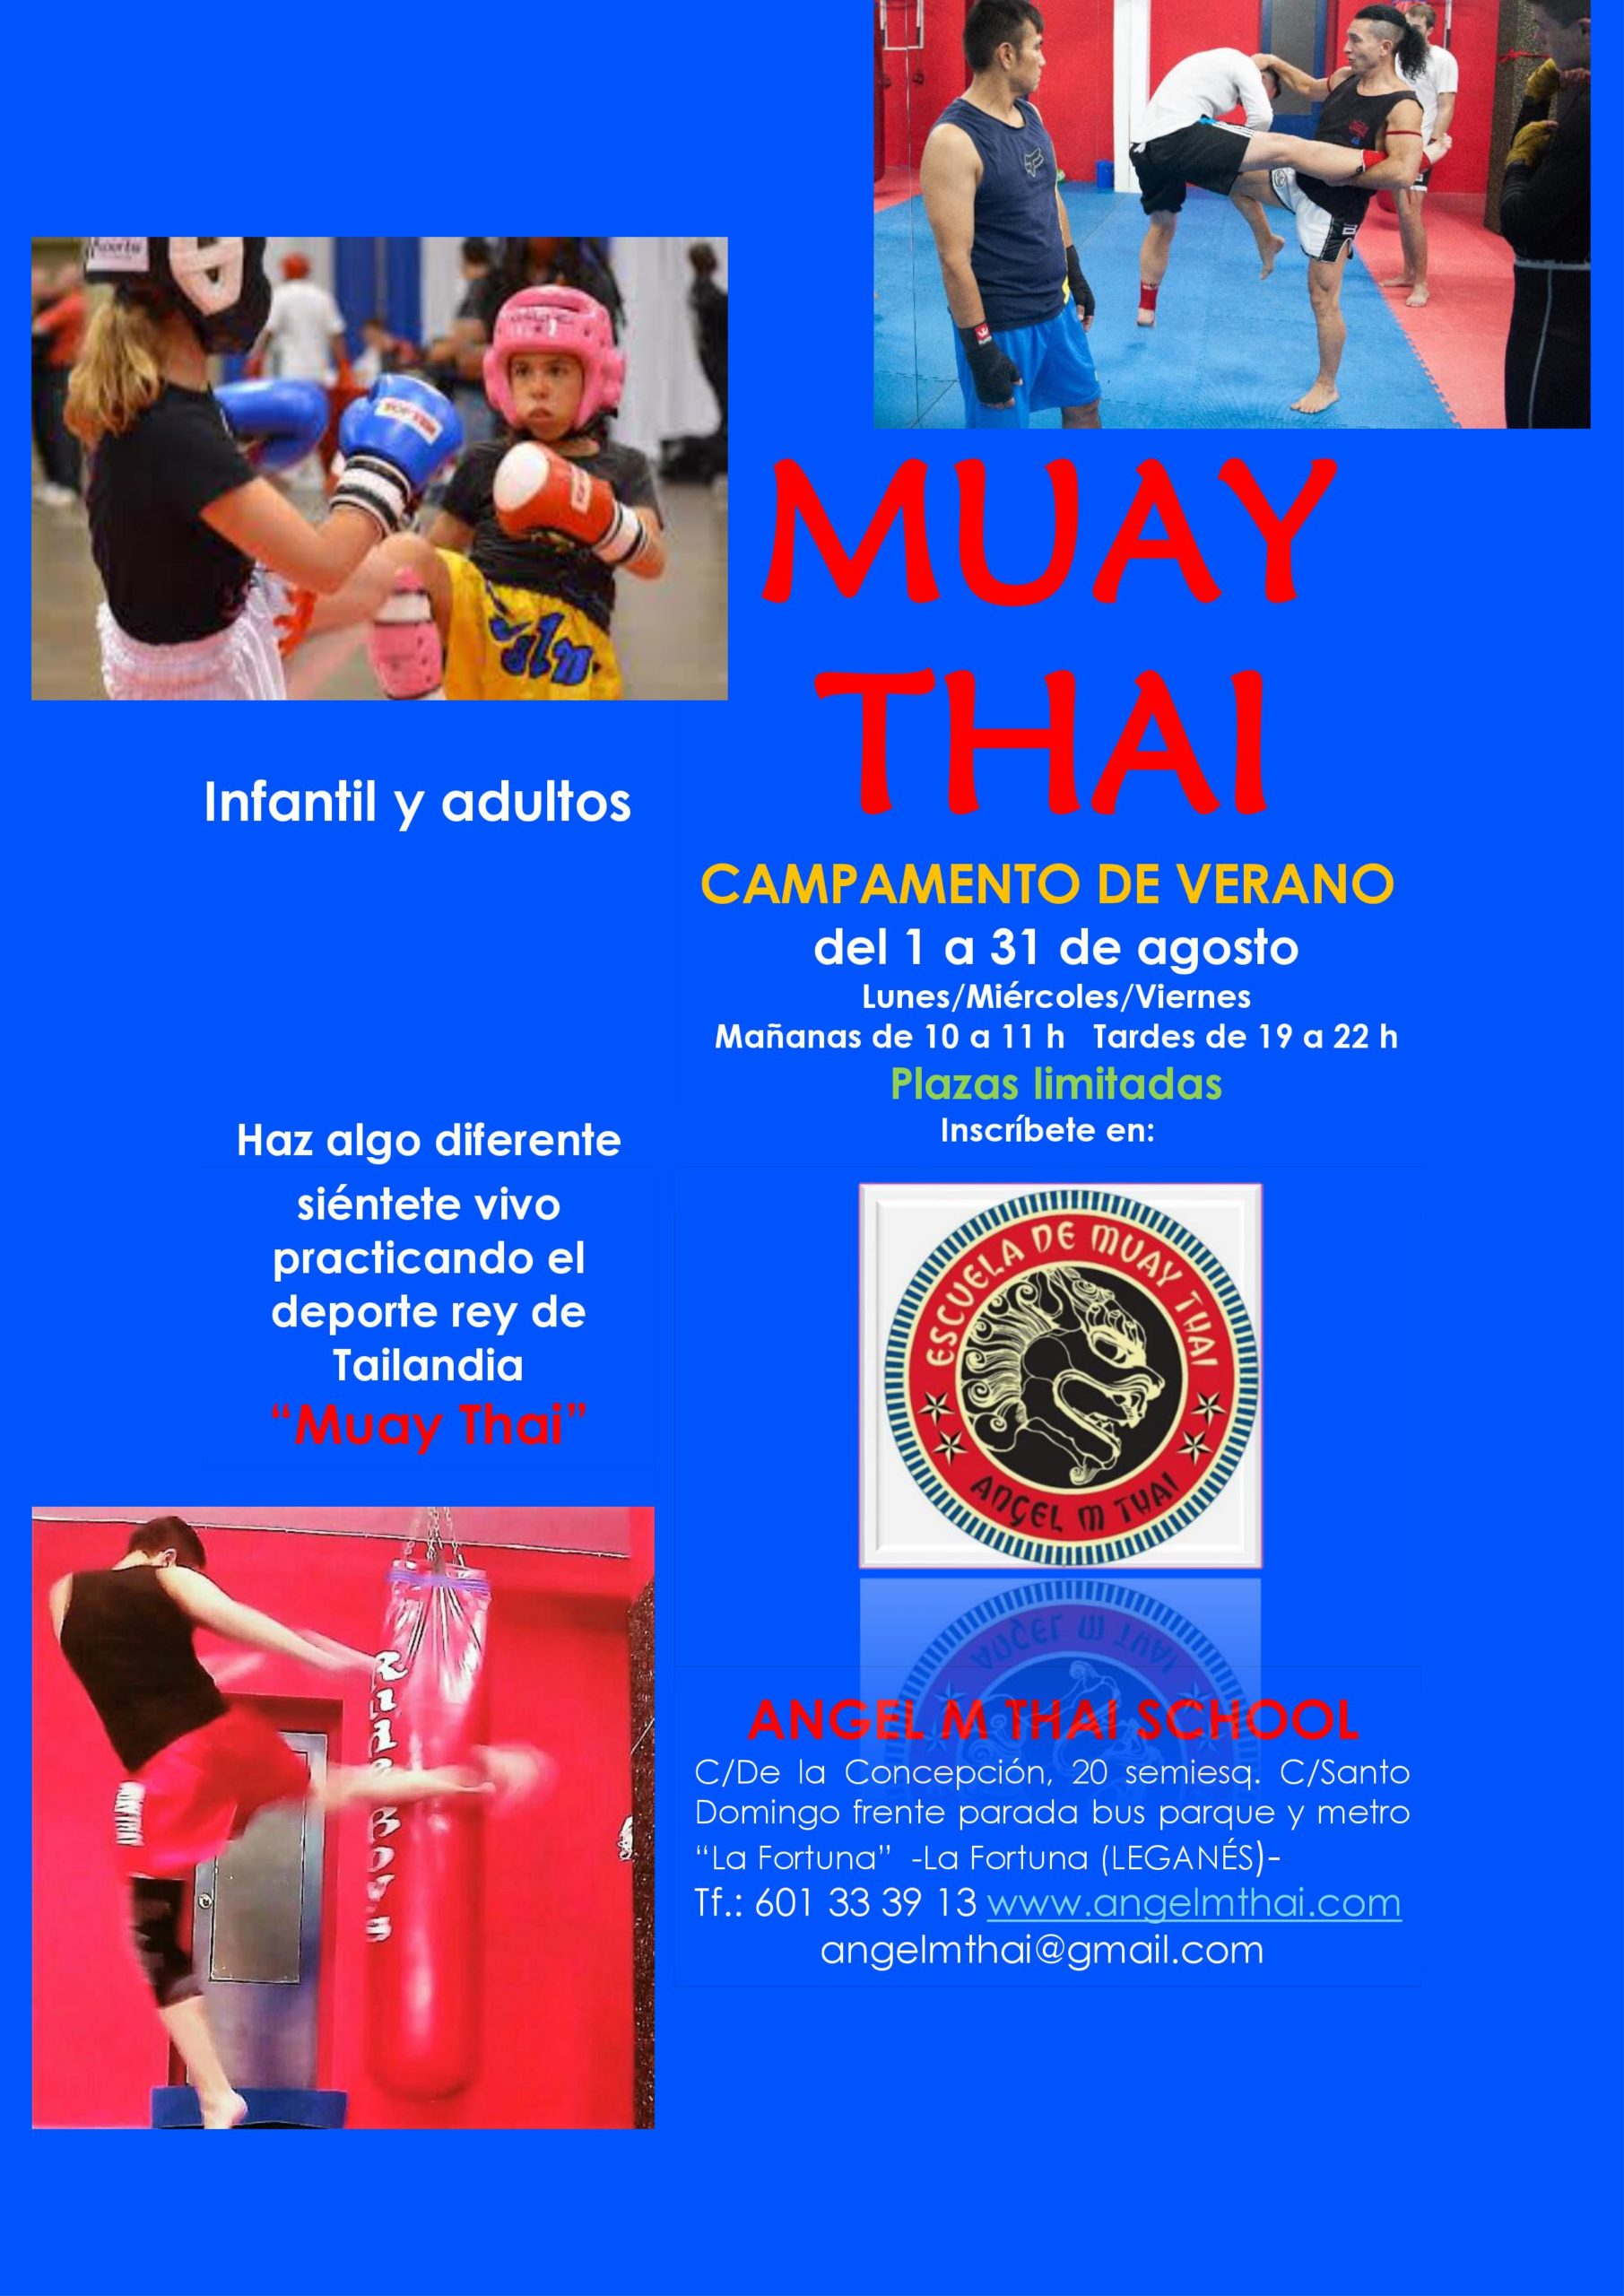 Campamento de verano de Muay Thai en La Fortuna